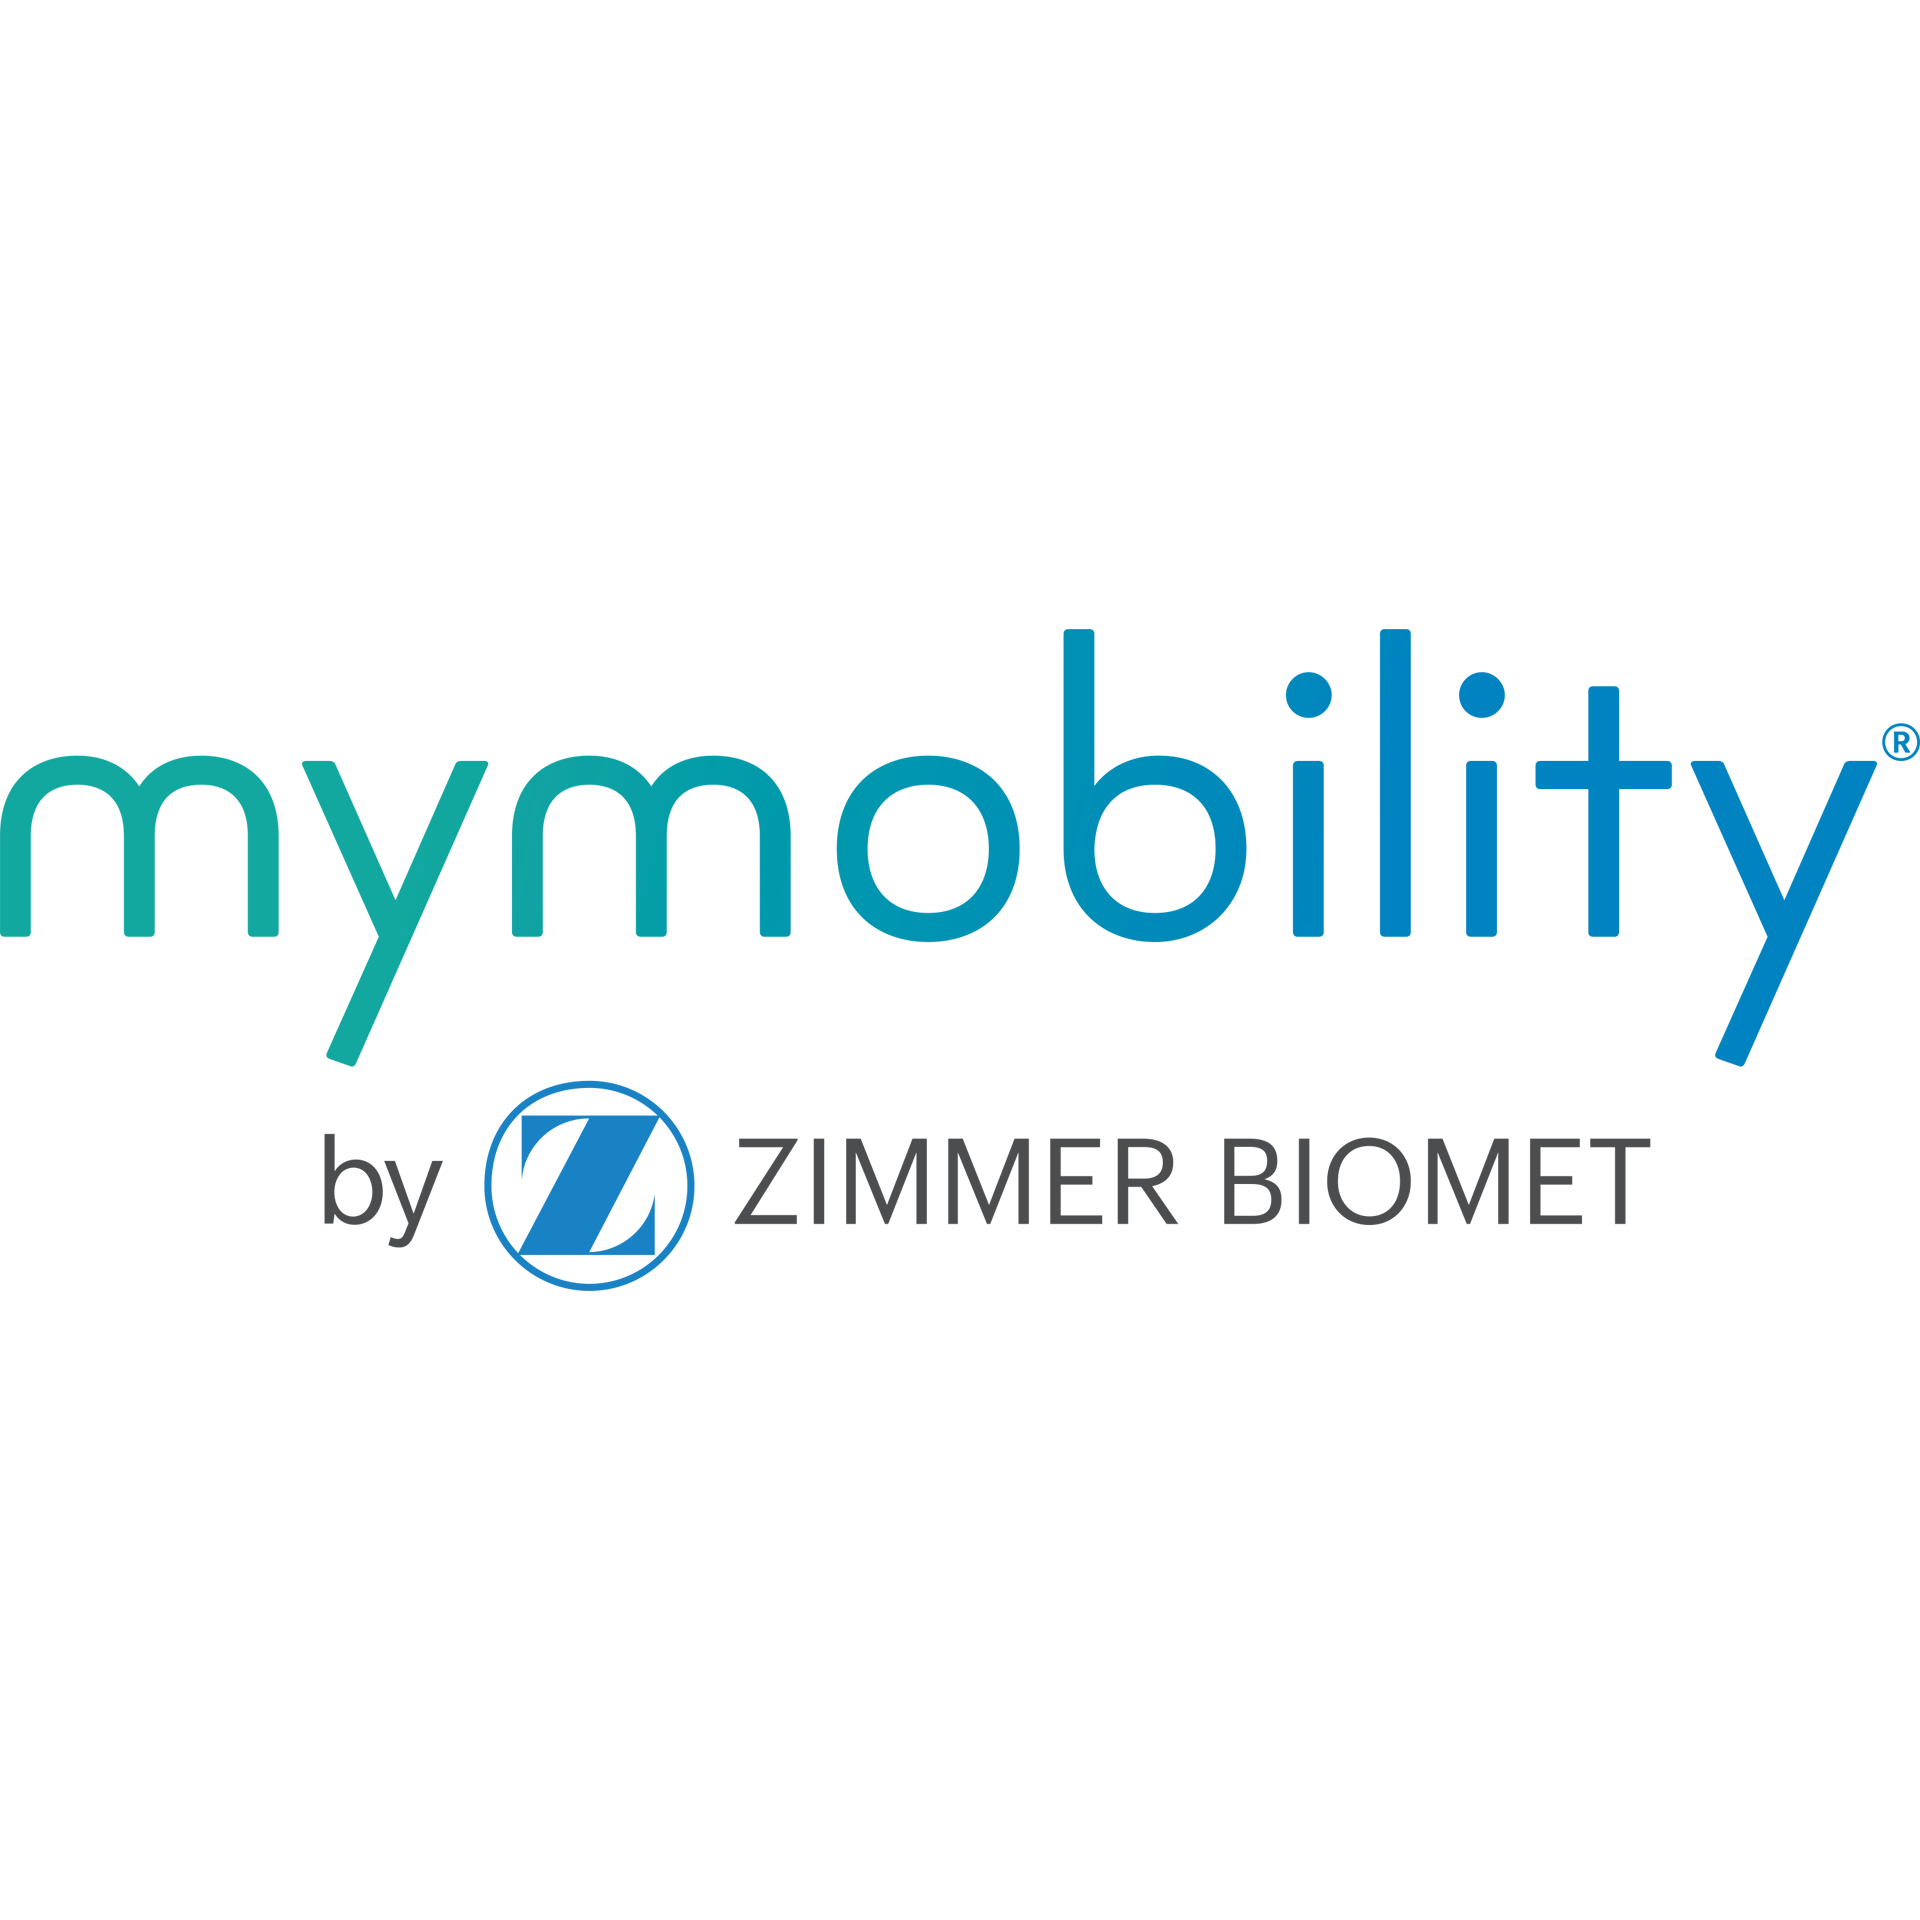 mymobility | Main Image